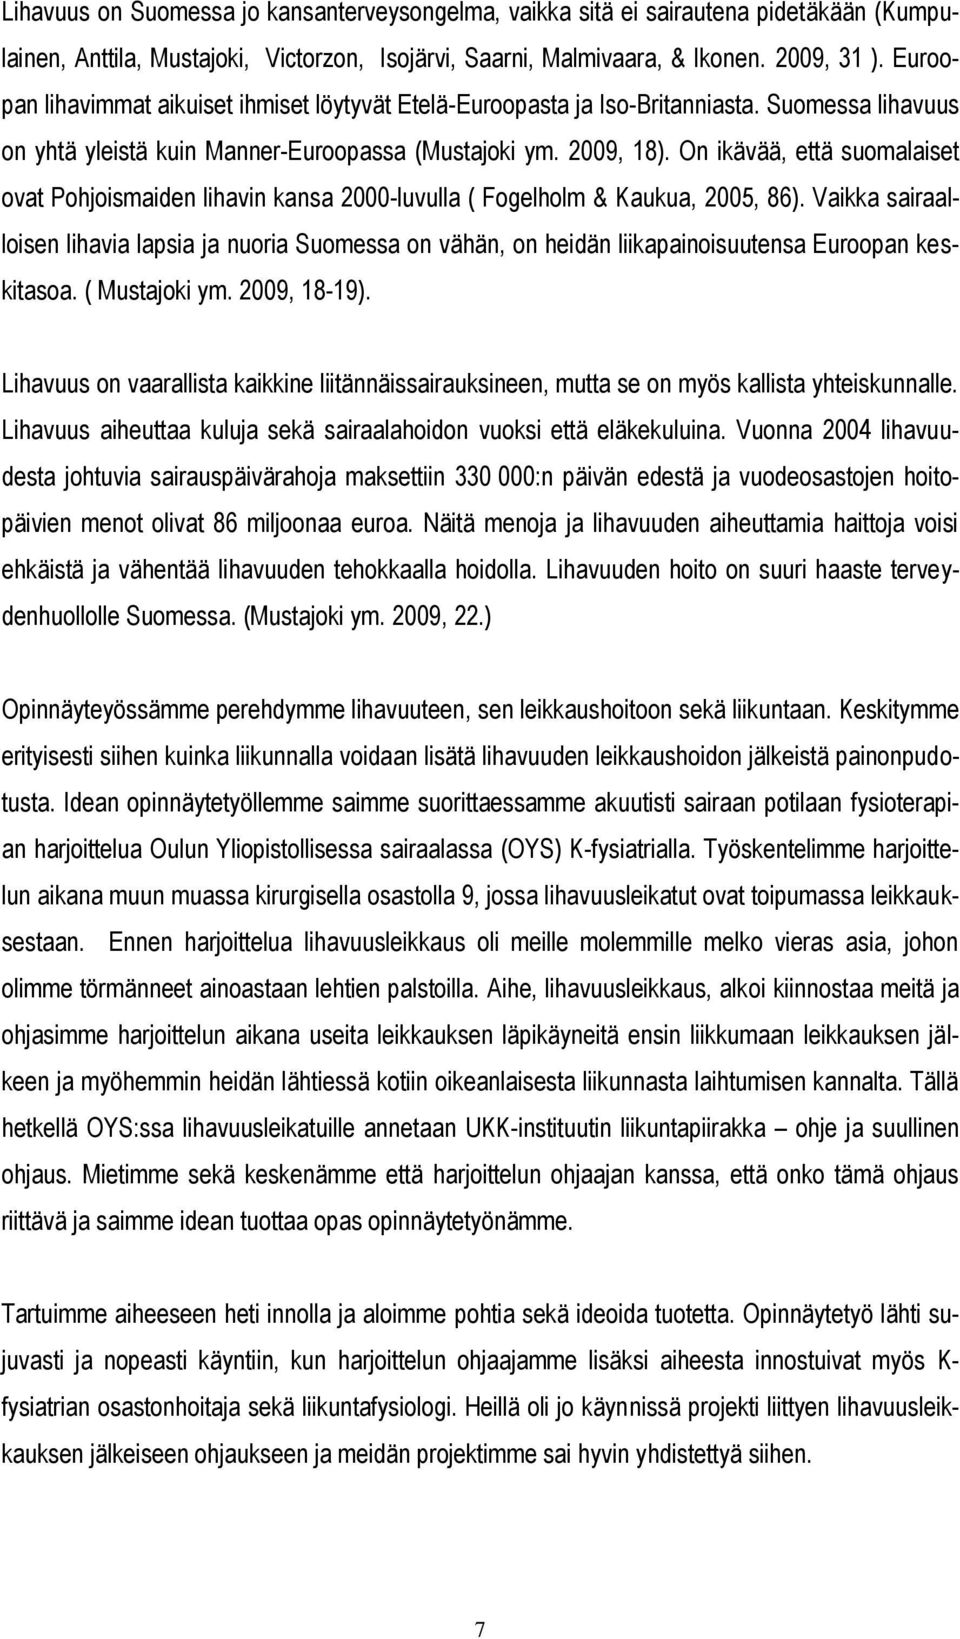 On ikävää, että suomalaiset ovat Pohjoismaiden lihavin kansa 2000-luvulla ( Fogelholm & Kaukua, 2005, 86).